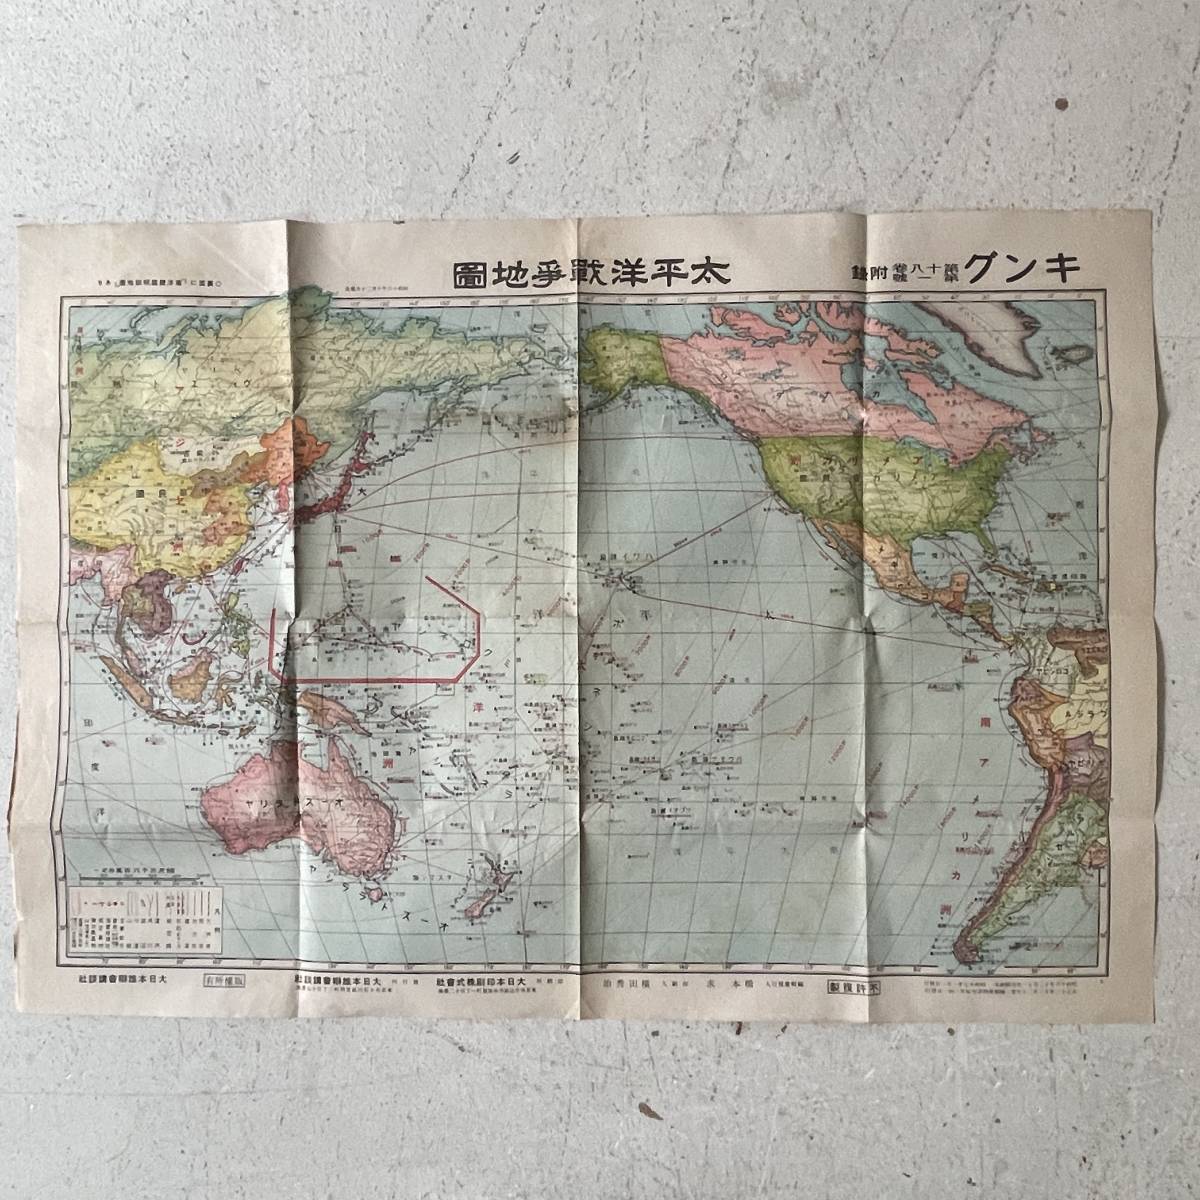 戦前 古地図 A9 キング付録 太平洋戦争地図 昭和17年 講談社 裏面 南洋諸国明細地図の画像1